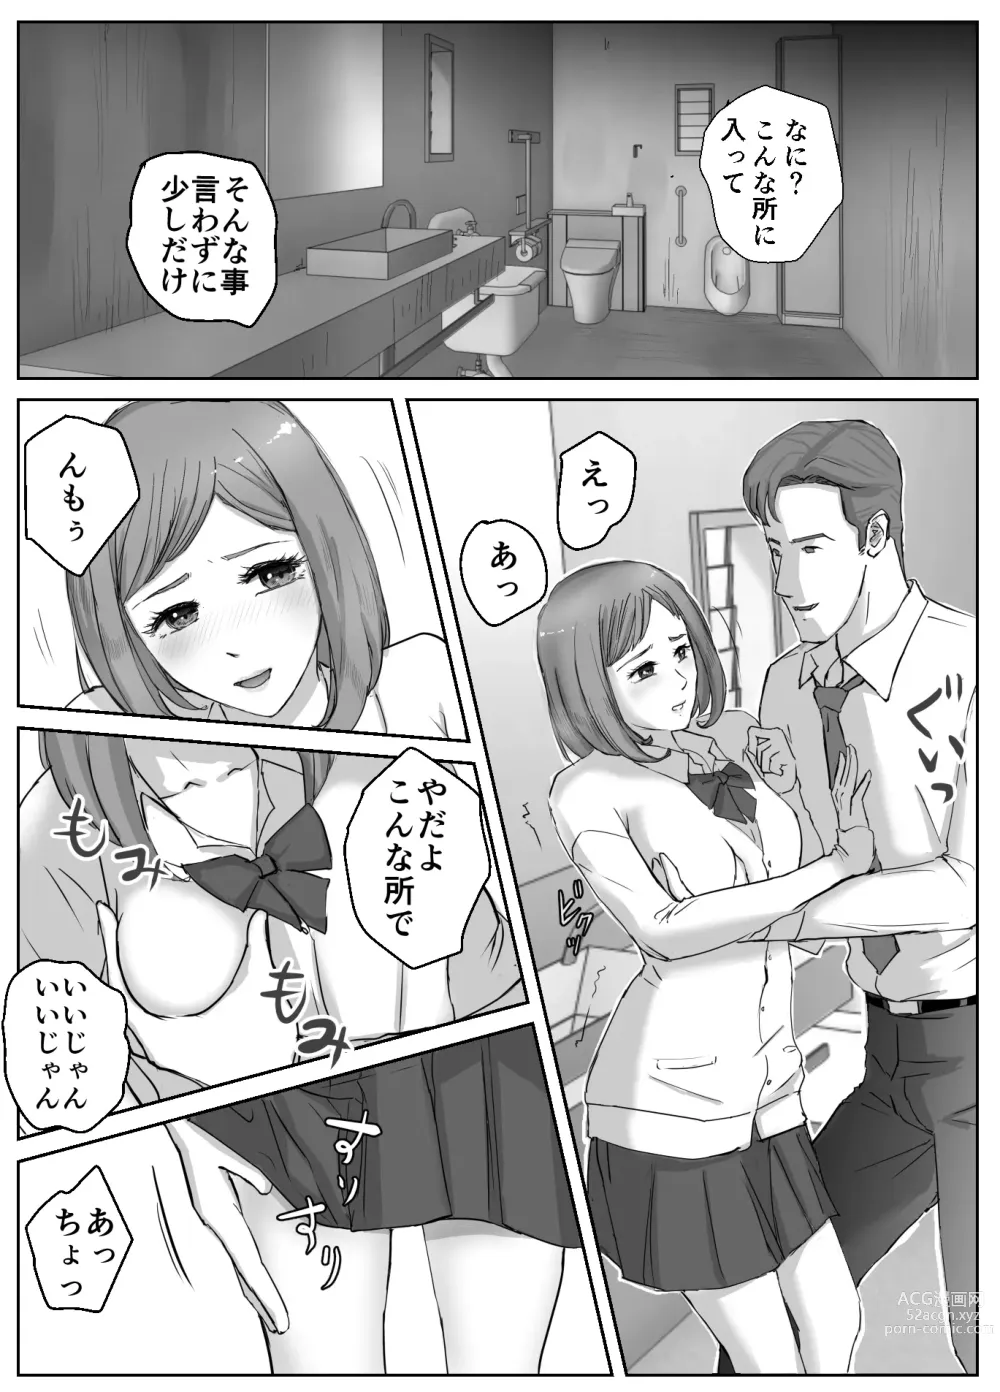 Page 5 of doujinshi Ano Hi no Uso 1